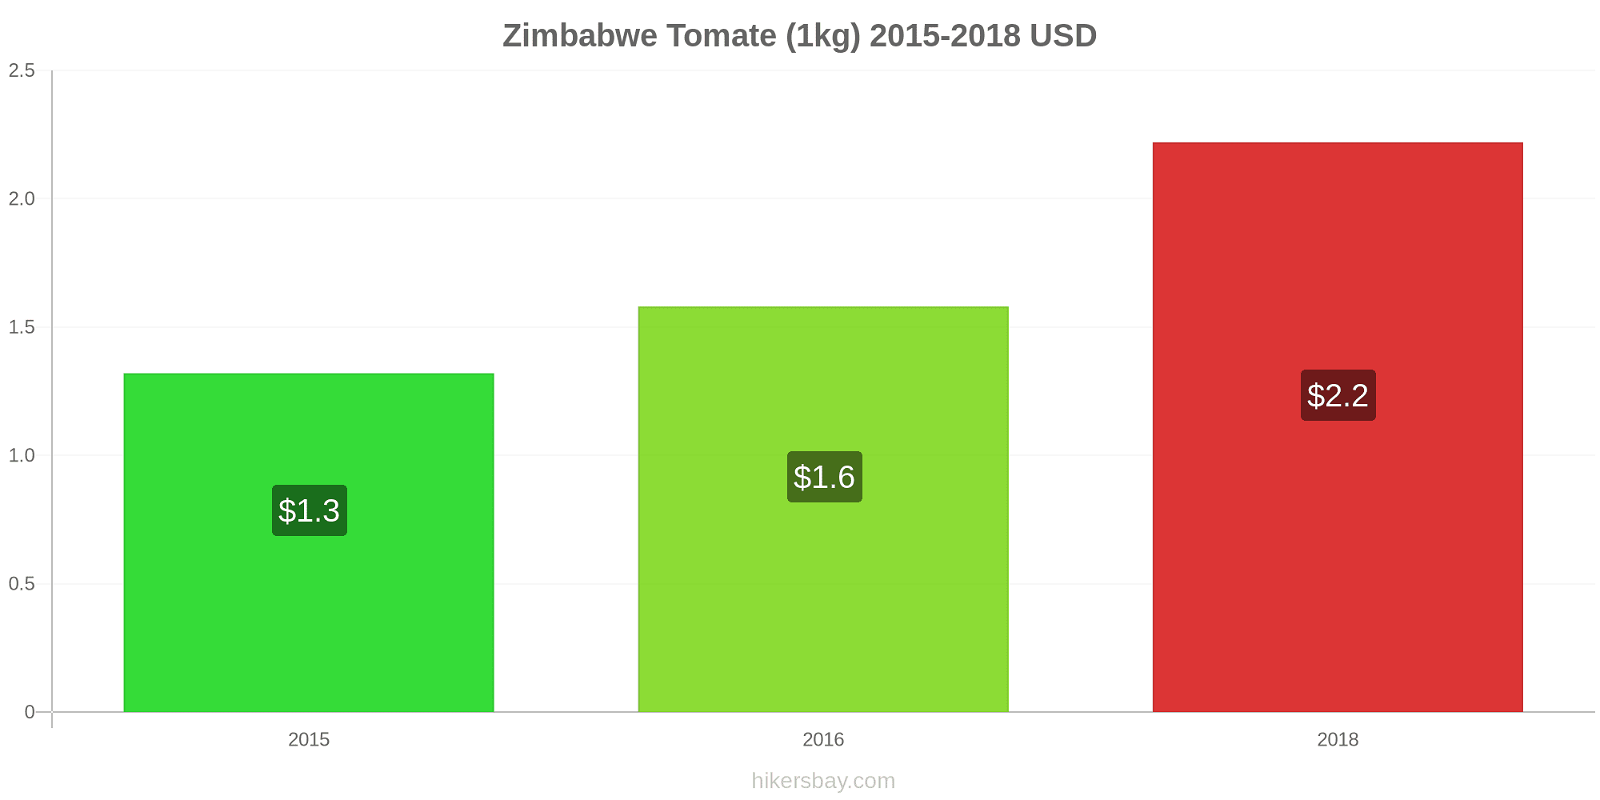 Zimbabwe variação de preço Tomate (1kg) hikersbay.com